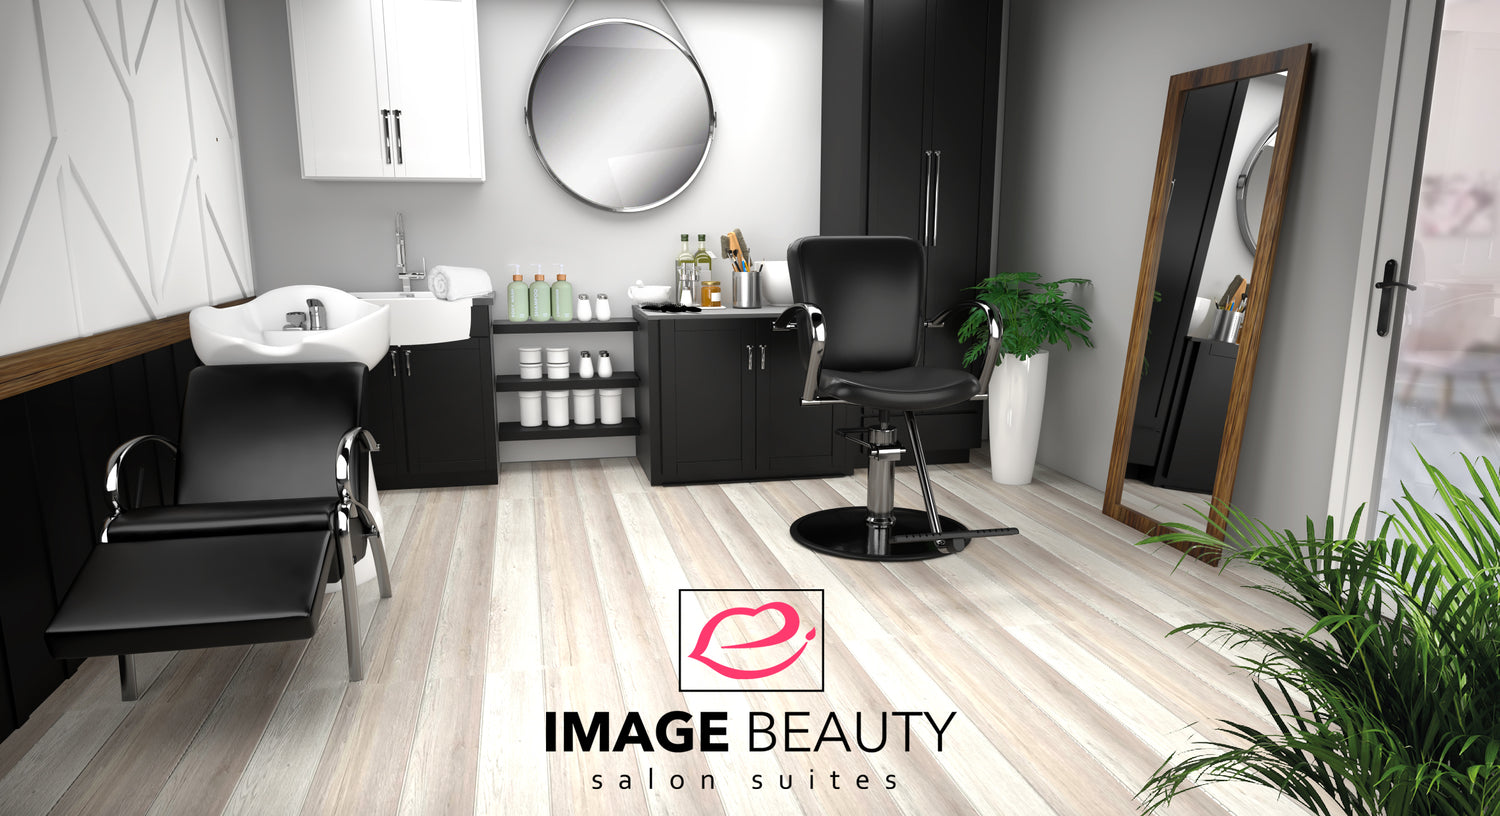 Image Beauty Salon Suites